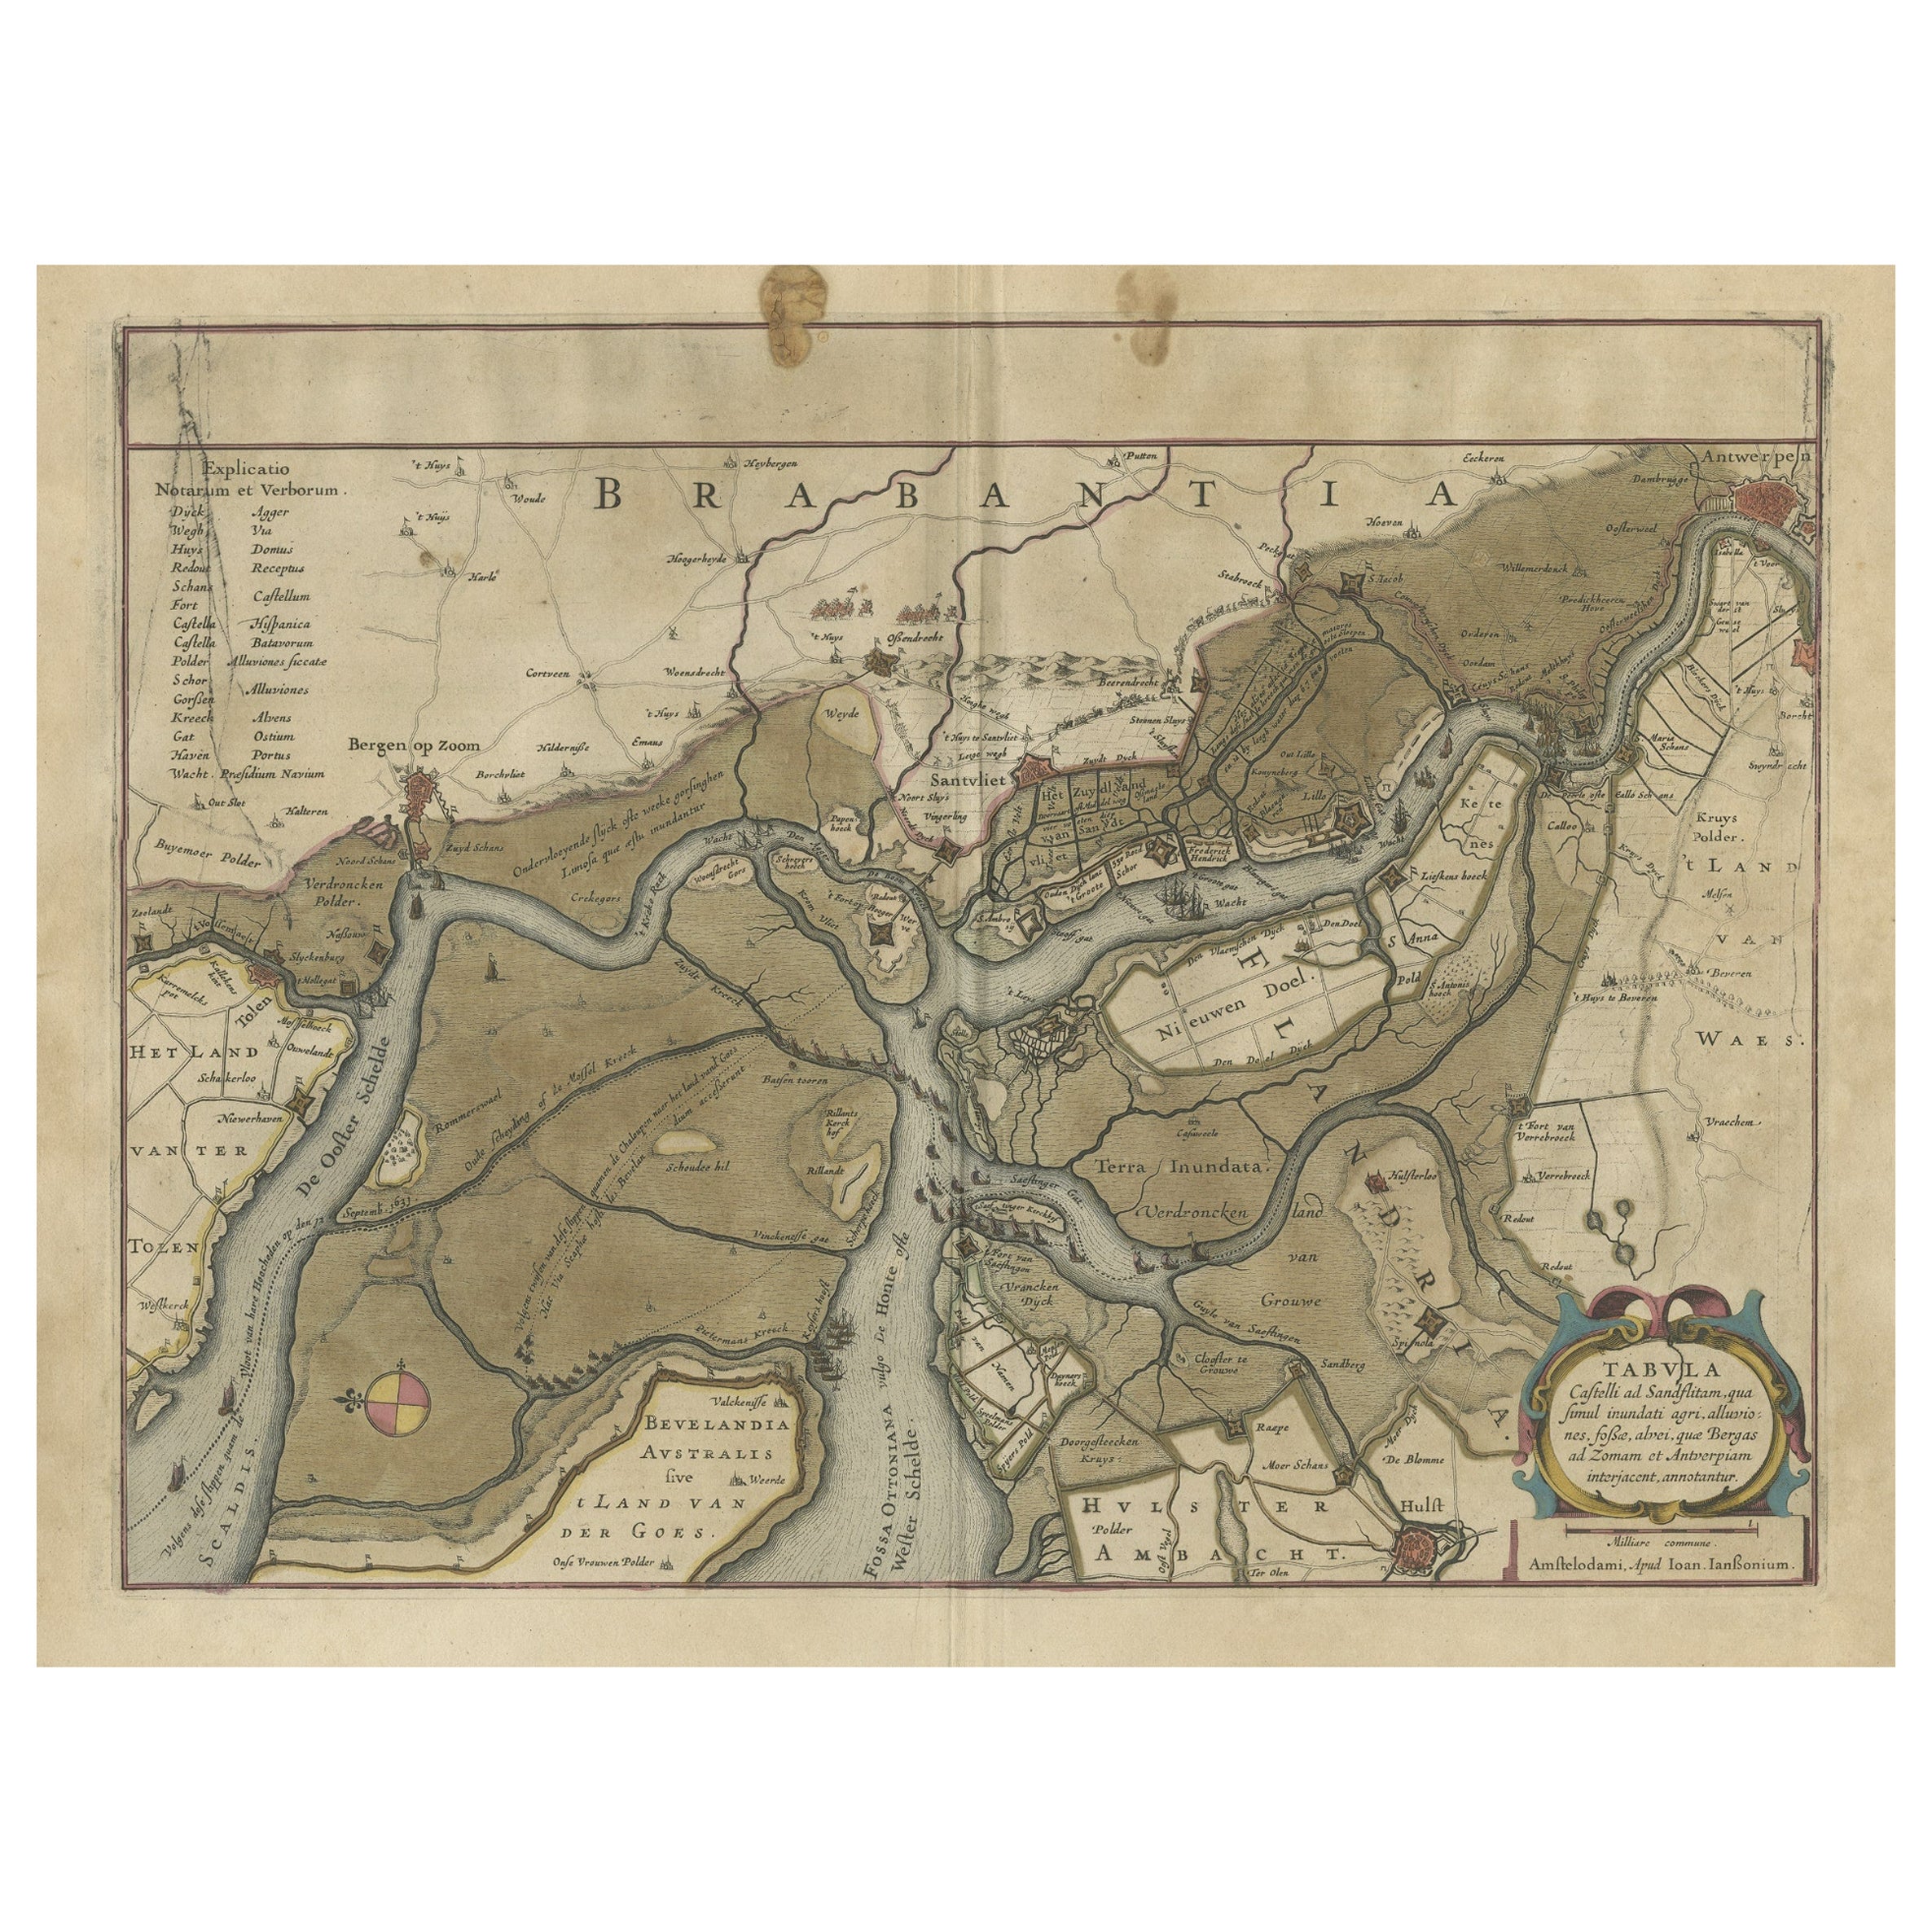 Antique Map of the region between Bergen op Zoom, Sandvliet, Hulst and Antwerp